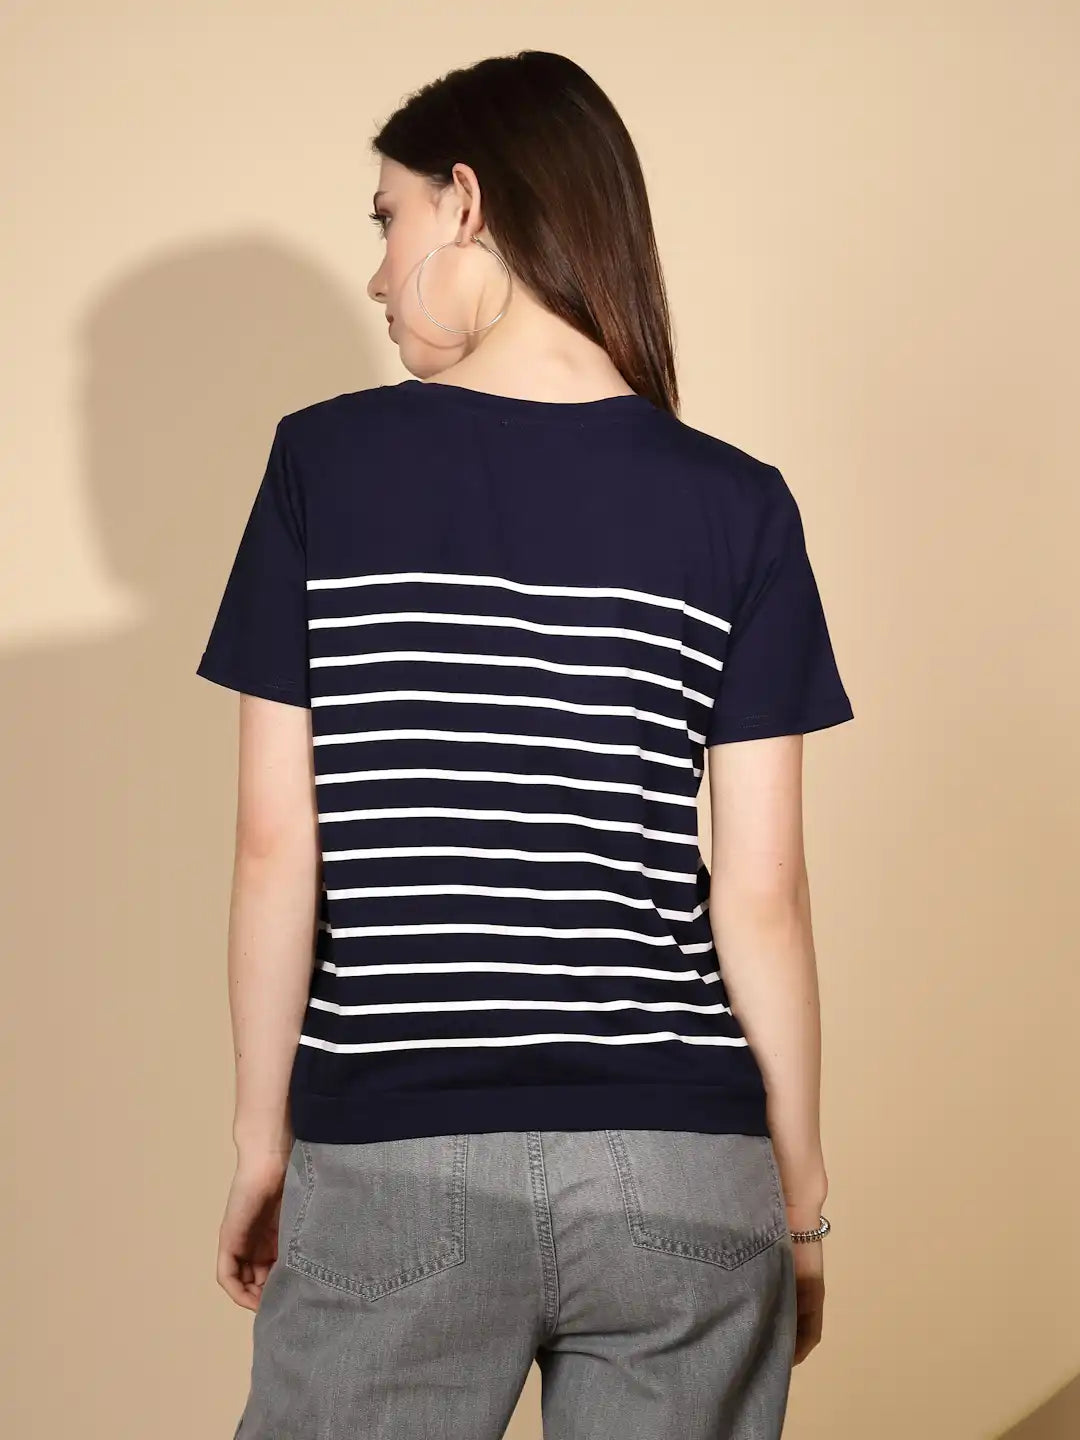 Navy Cotton Blend Regular Fit Top For Women